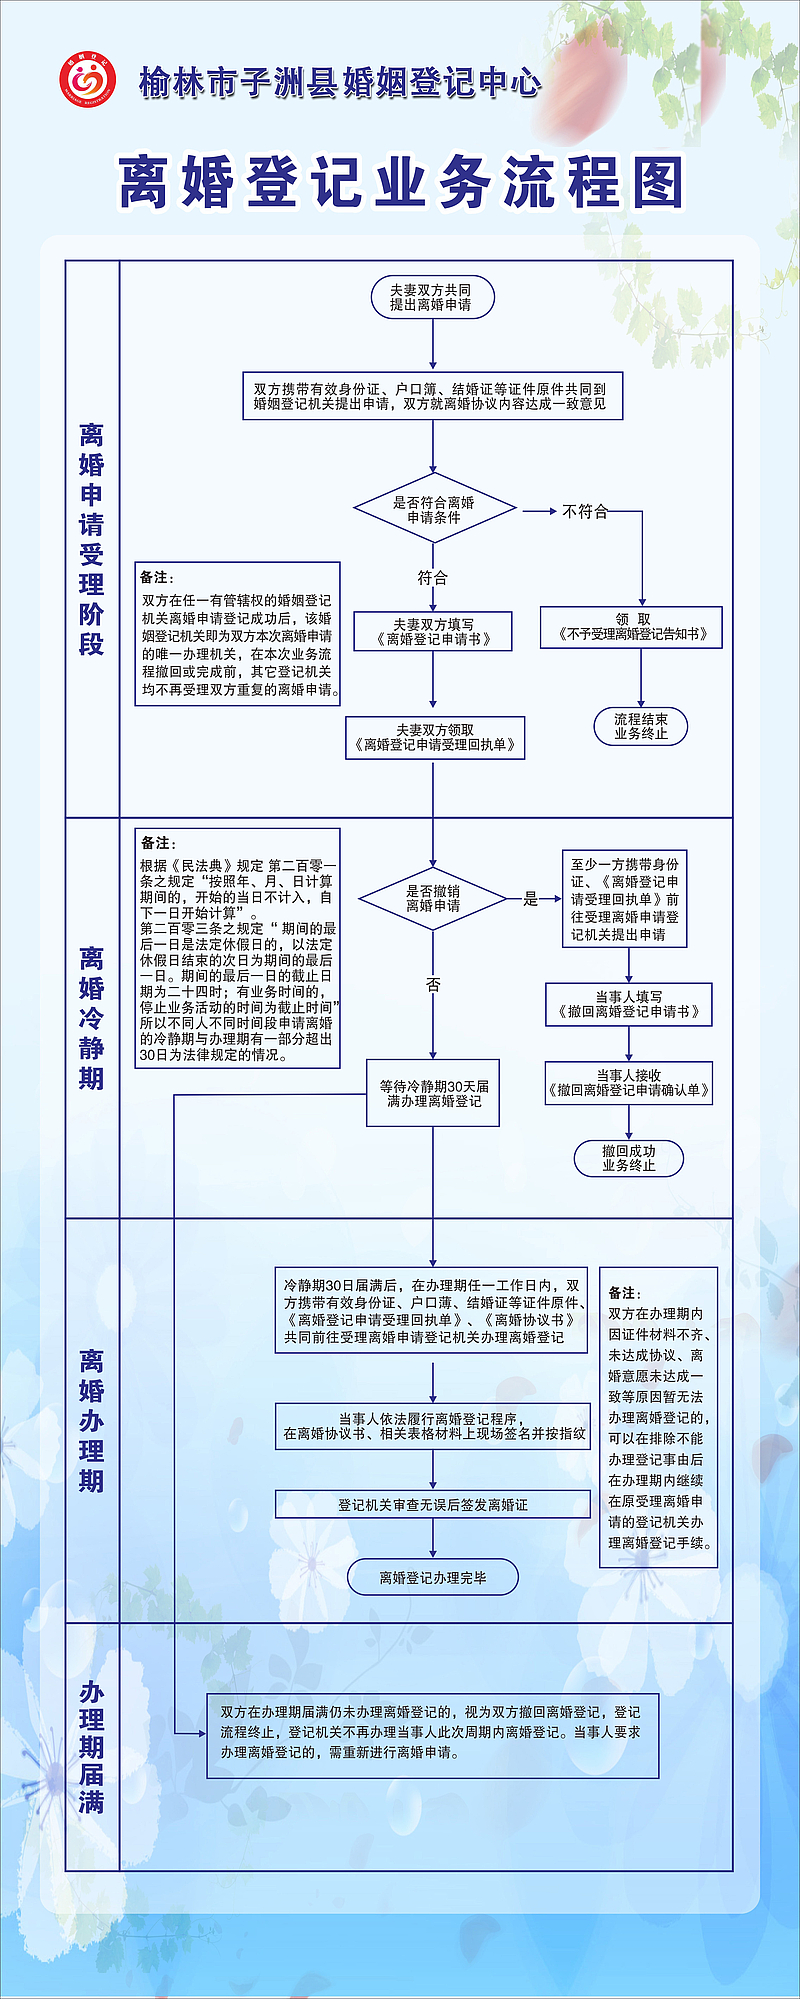 《中华人民共和国民法典》中有关婚姻登记的规定